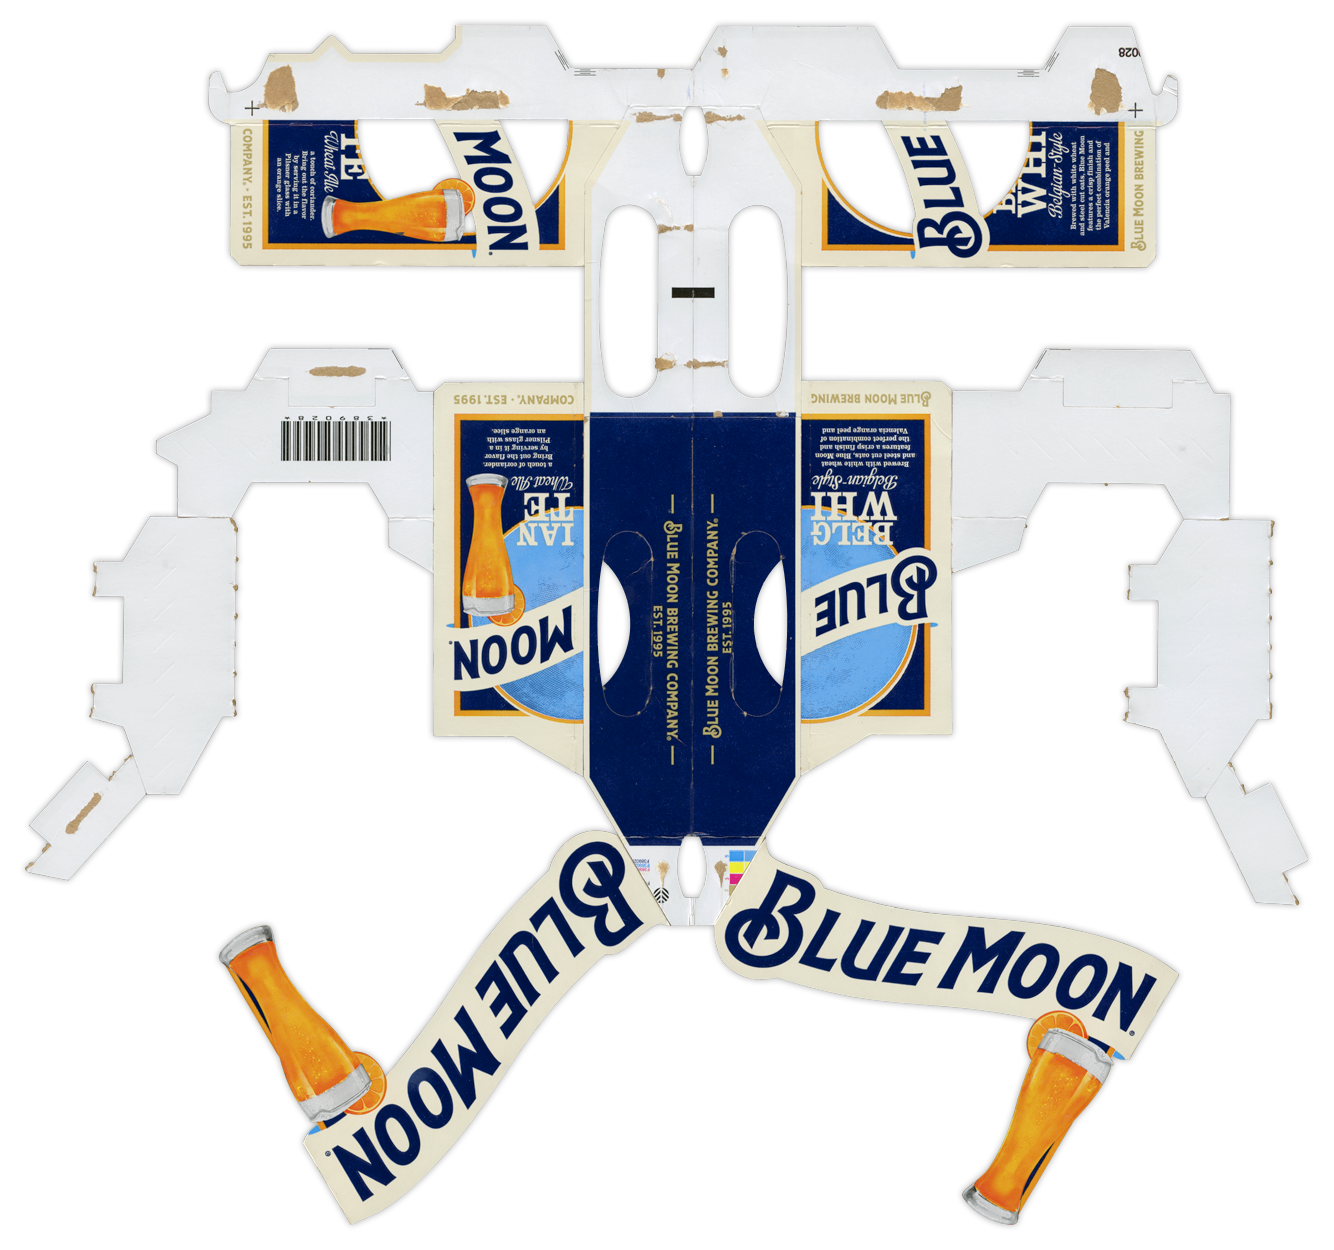 Blue Moon Belgian White BoxBot 